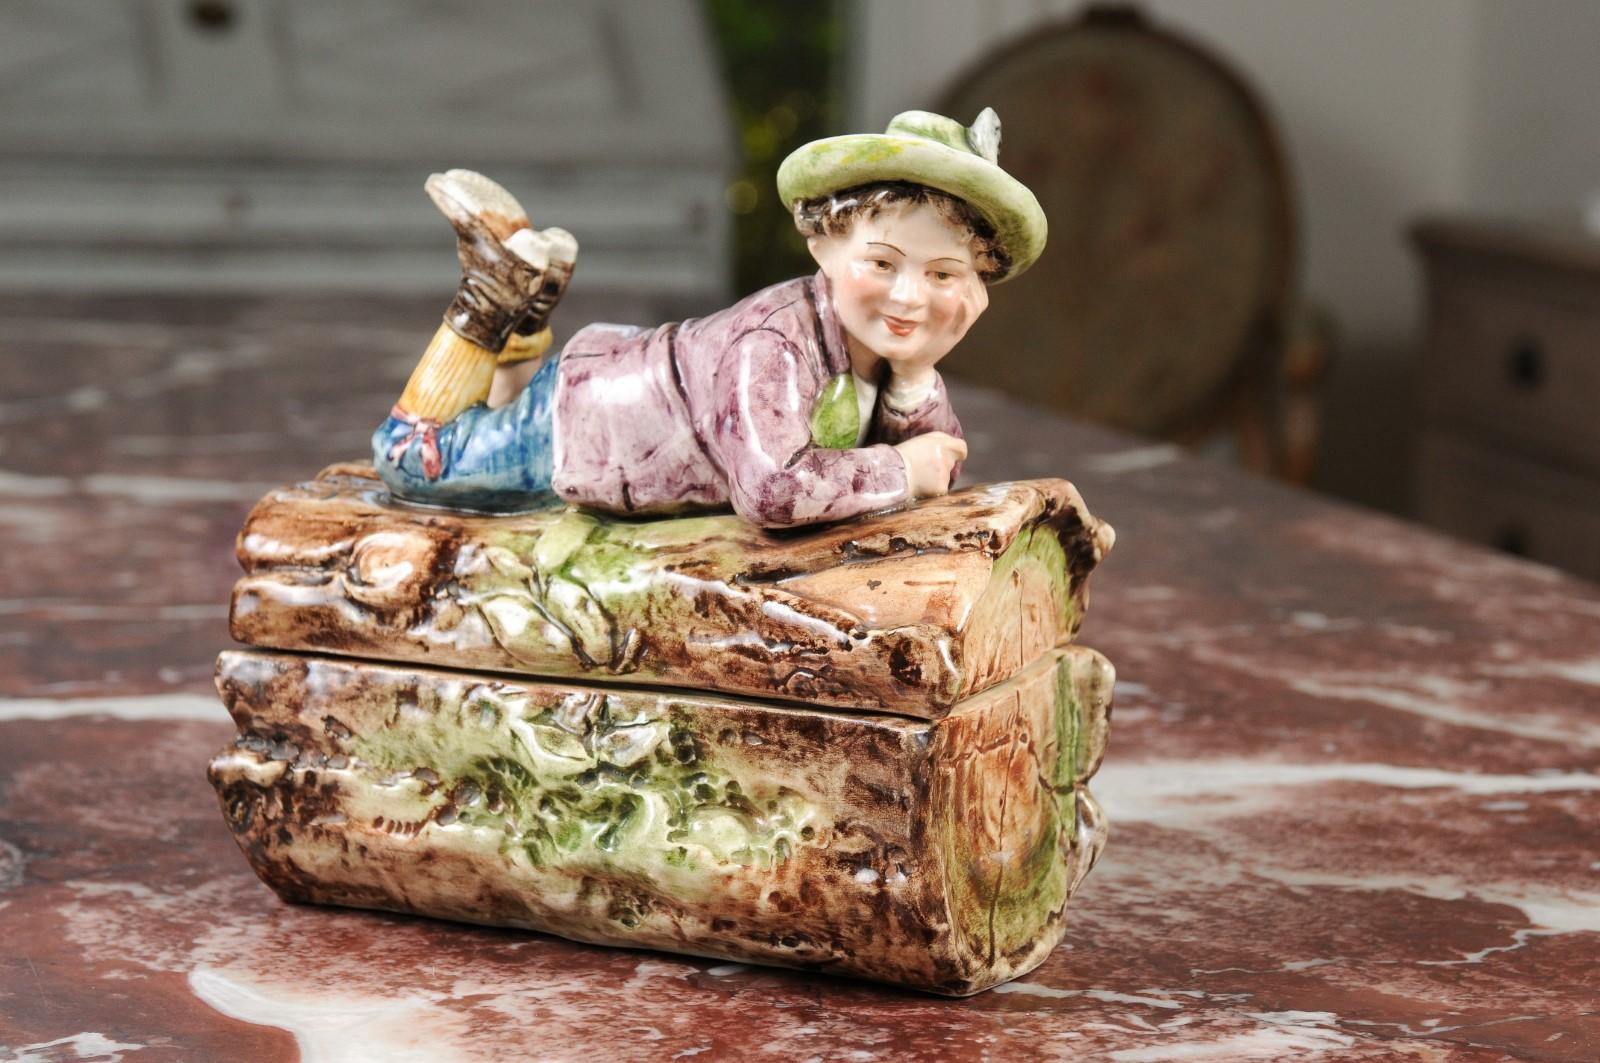 Eine französische Barbotine-Bonbondose aus dem 19. Jahrhundert, die einen Jungen darstellt, der auf einem Baumstamm liegt. Diese bezaubernde Bonbondose stammt aus dem Frankreich des 19. Jahrhunderts und zeigt ein zartes Barbotine-Dekor, das eine